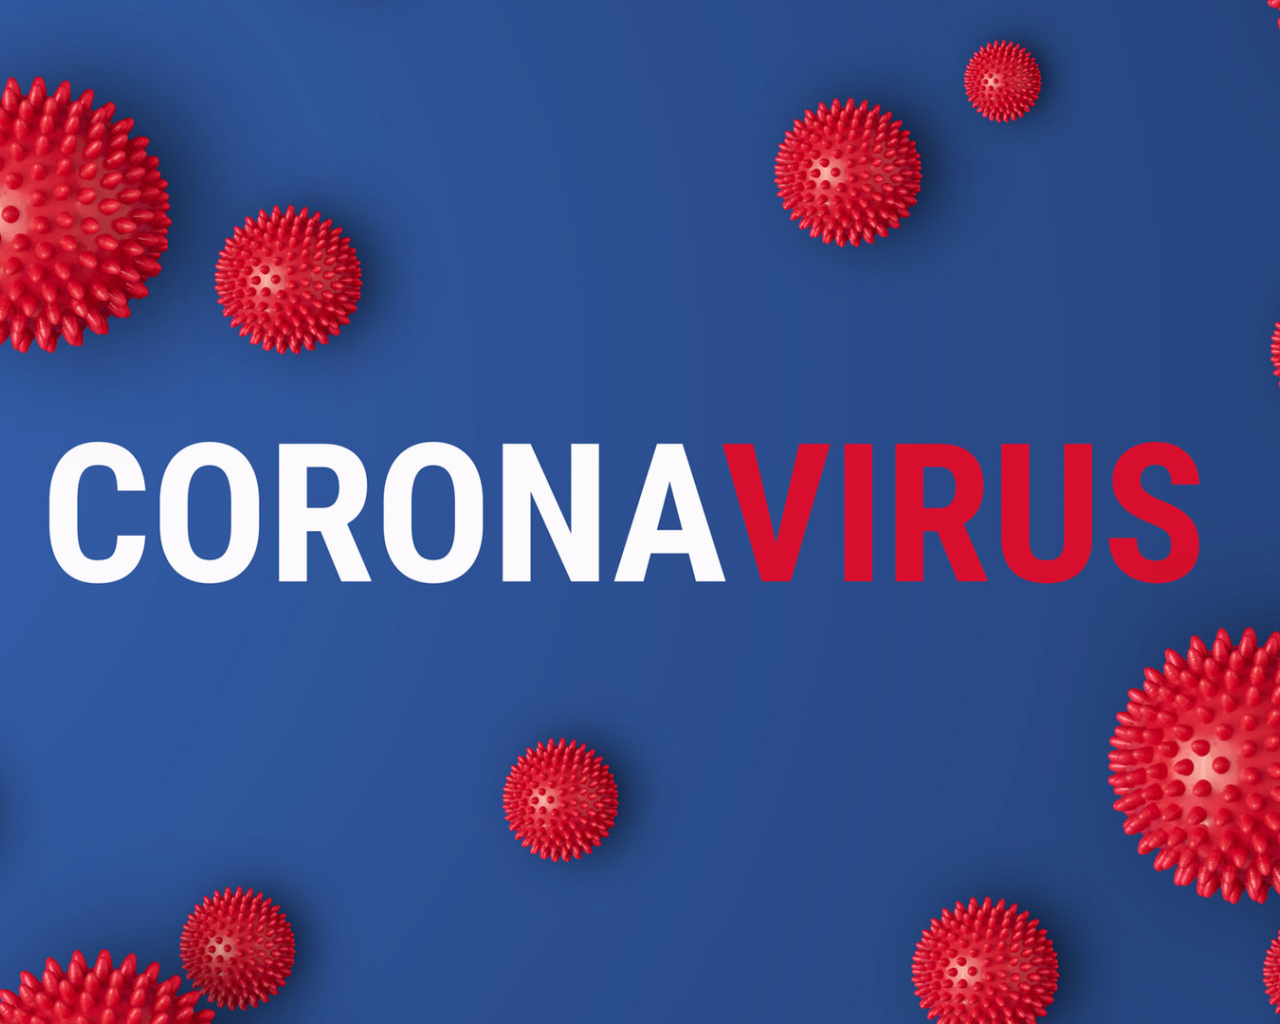 Надпись коронавирус на синем фоне, 2020